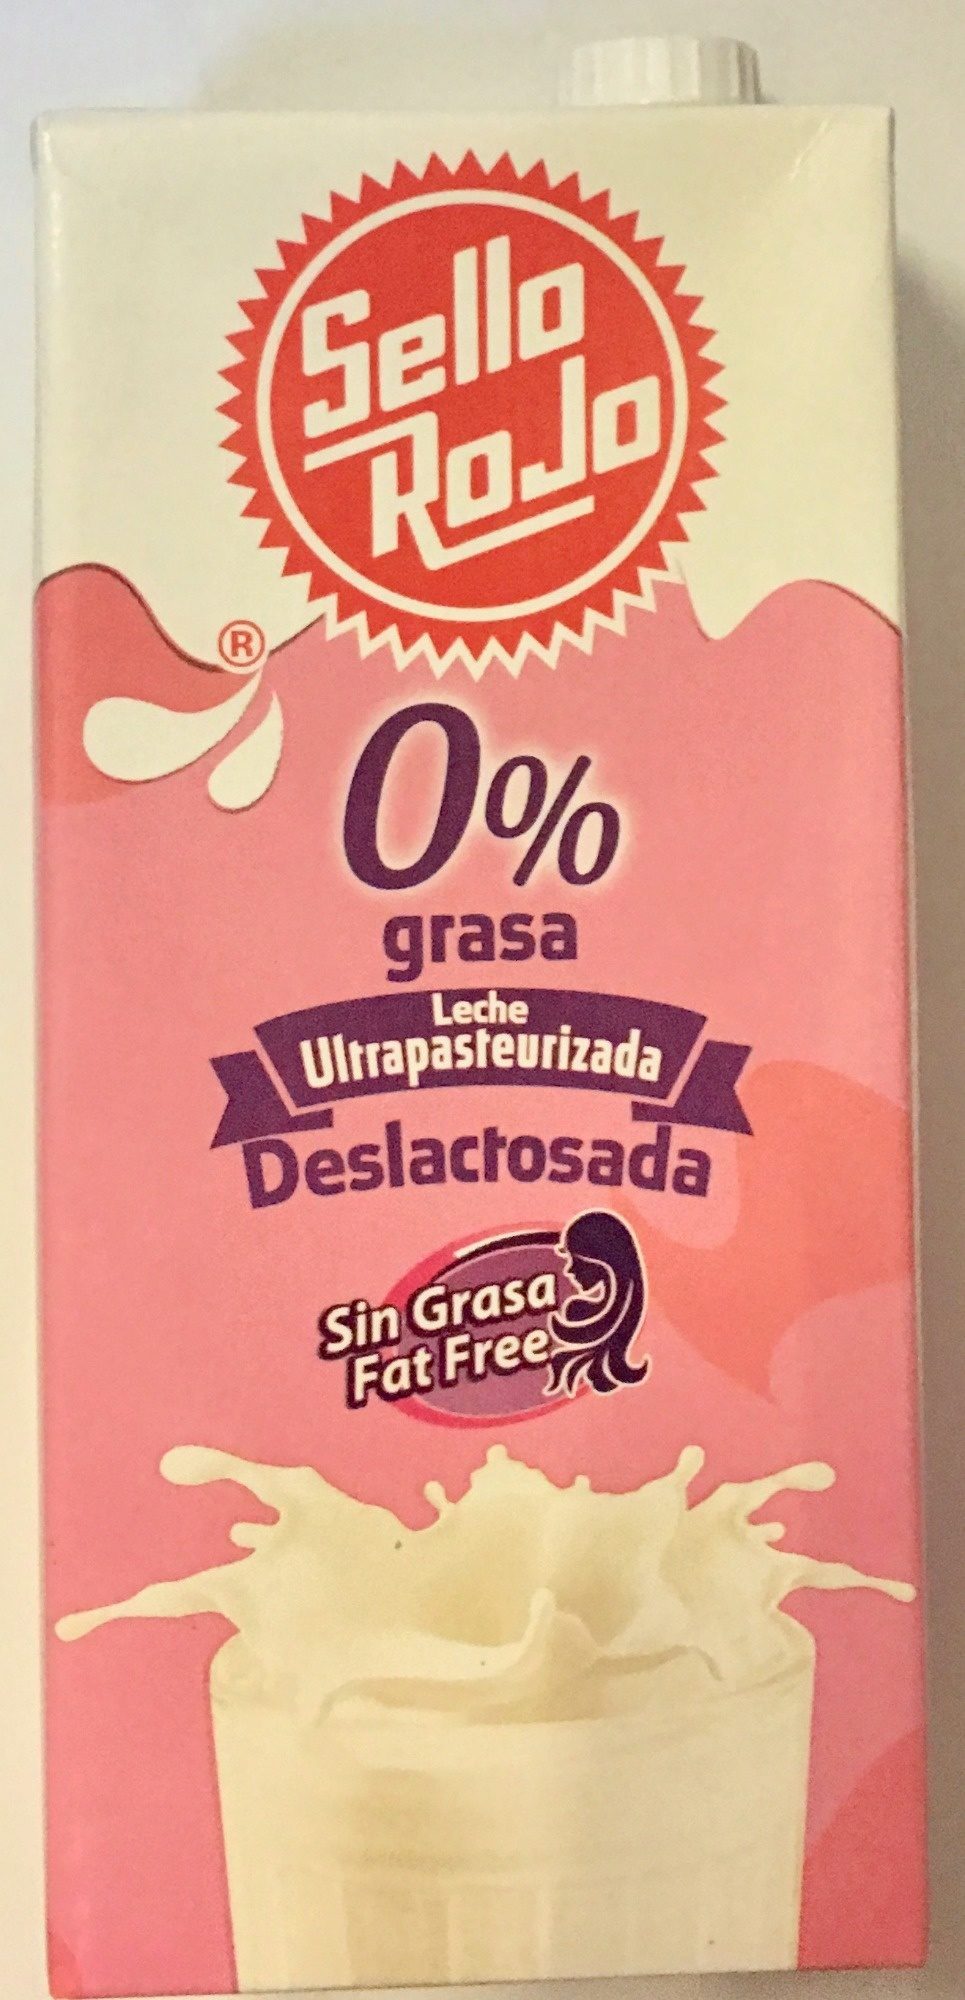 Sello Rojo Deslactosada 0% grasa - Product - es